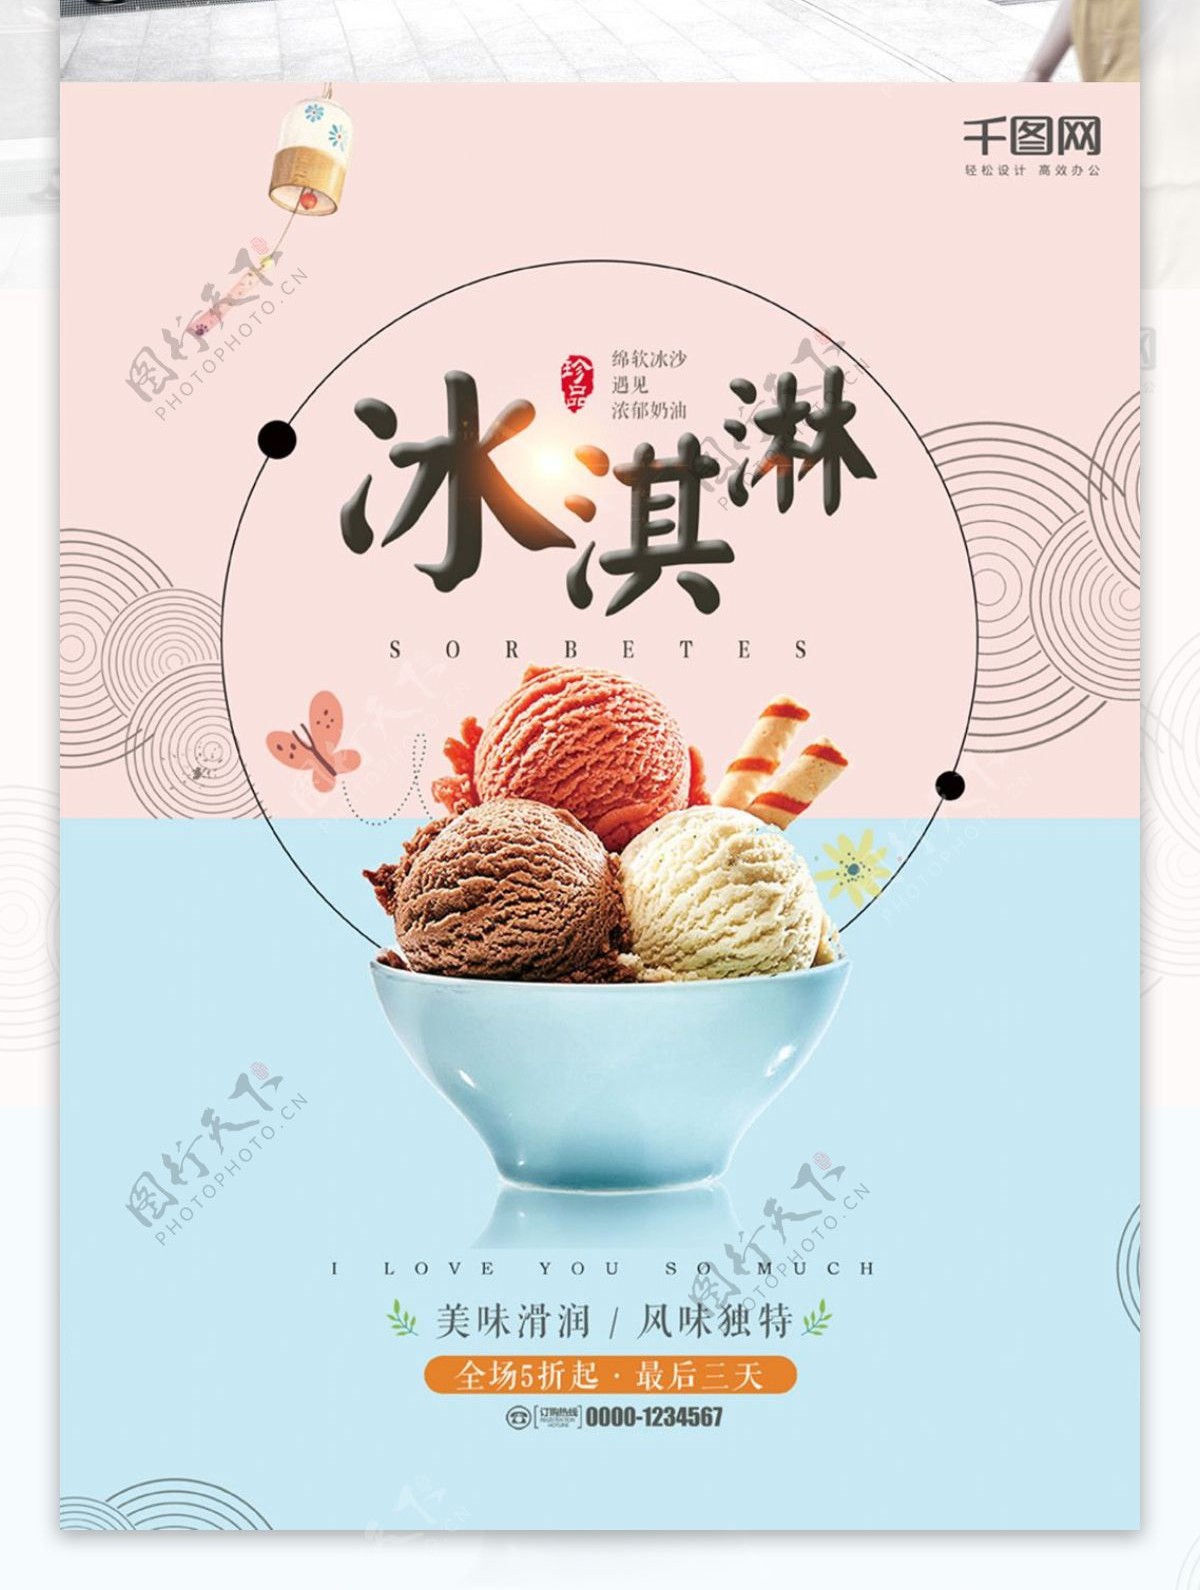 日系简约冰淇淋促销海报